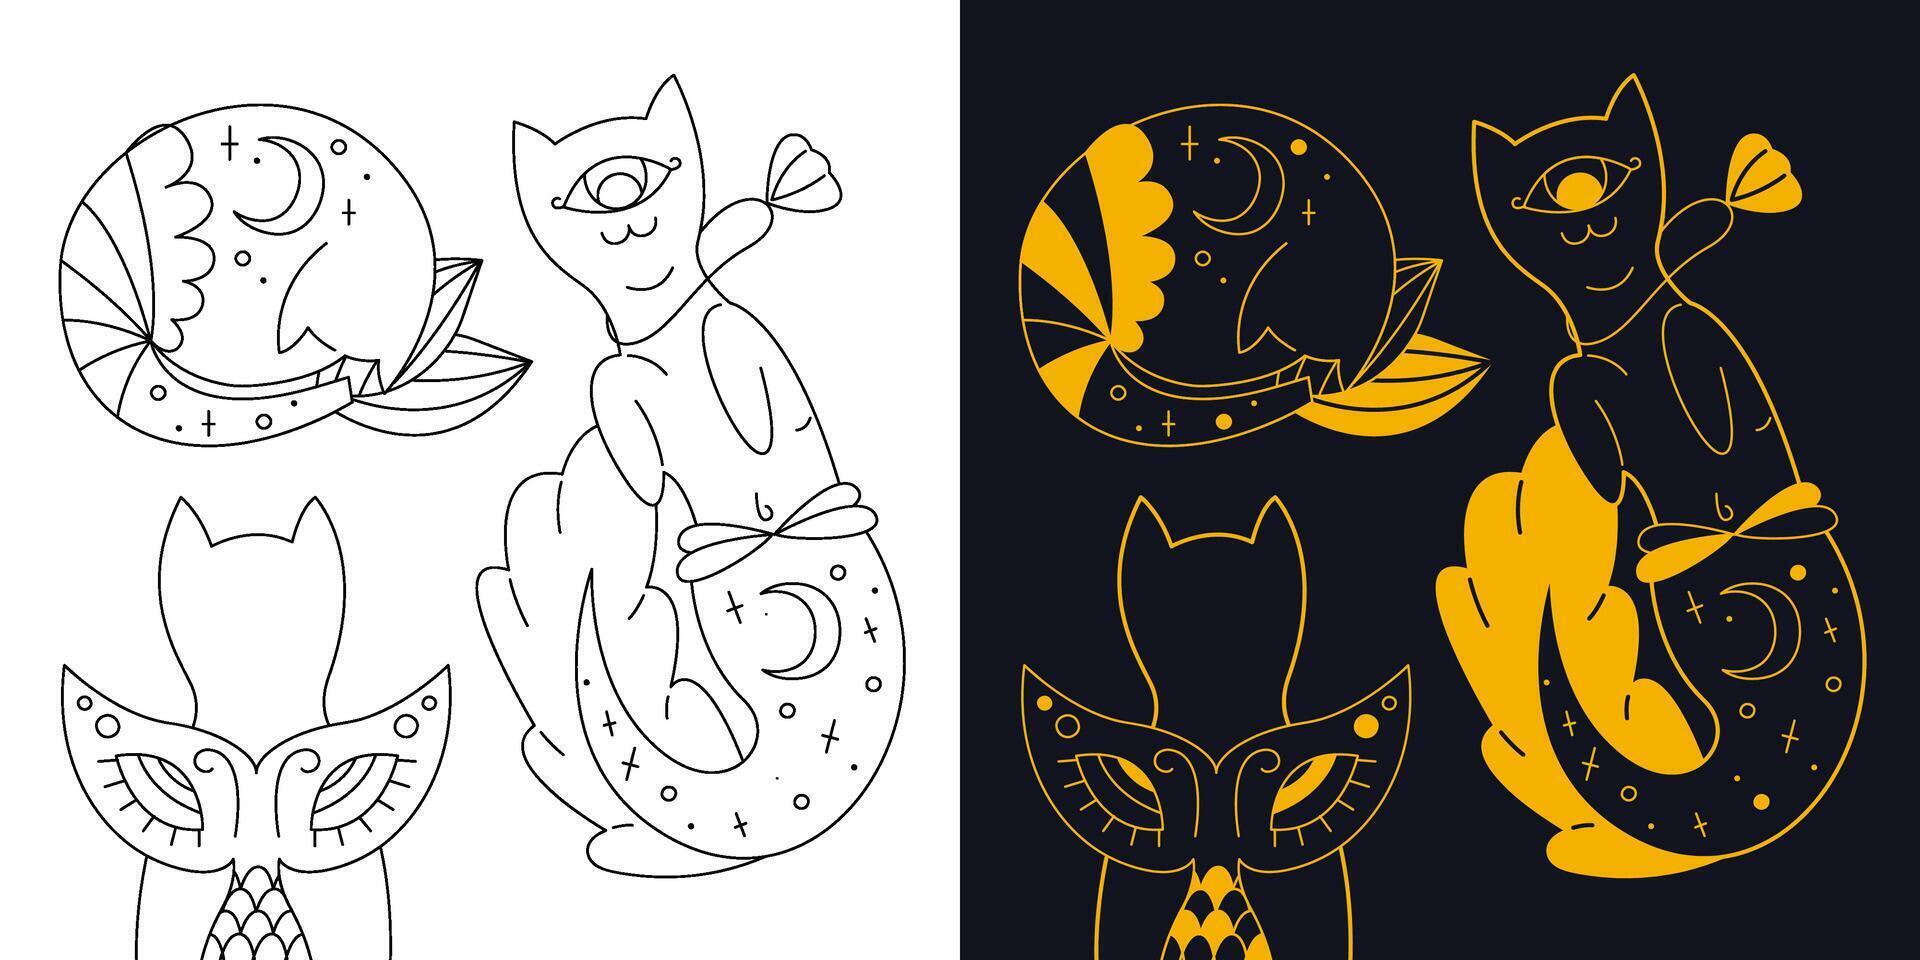 linda místico sirena gatos bicolor y negro y blanco contorno vector ilustración.